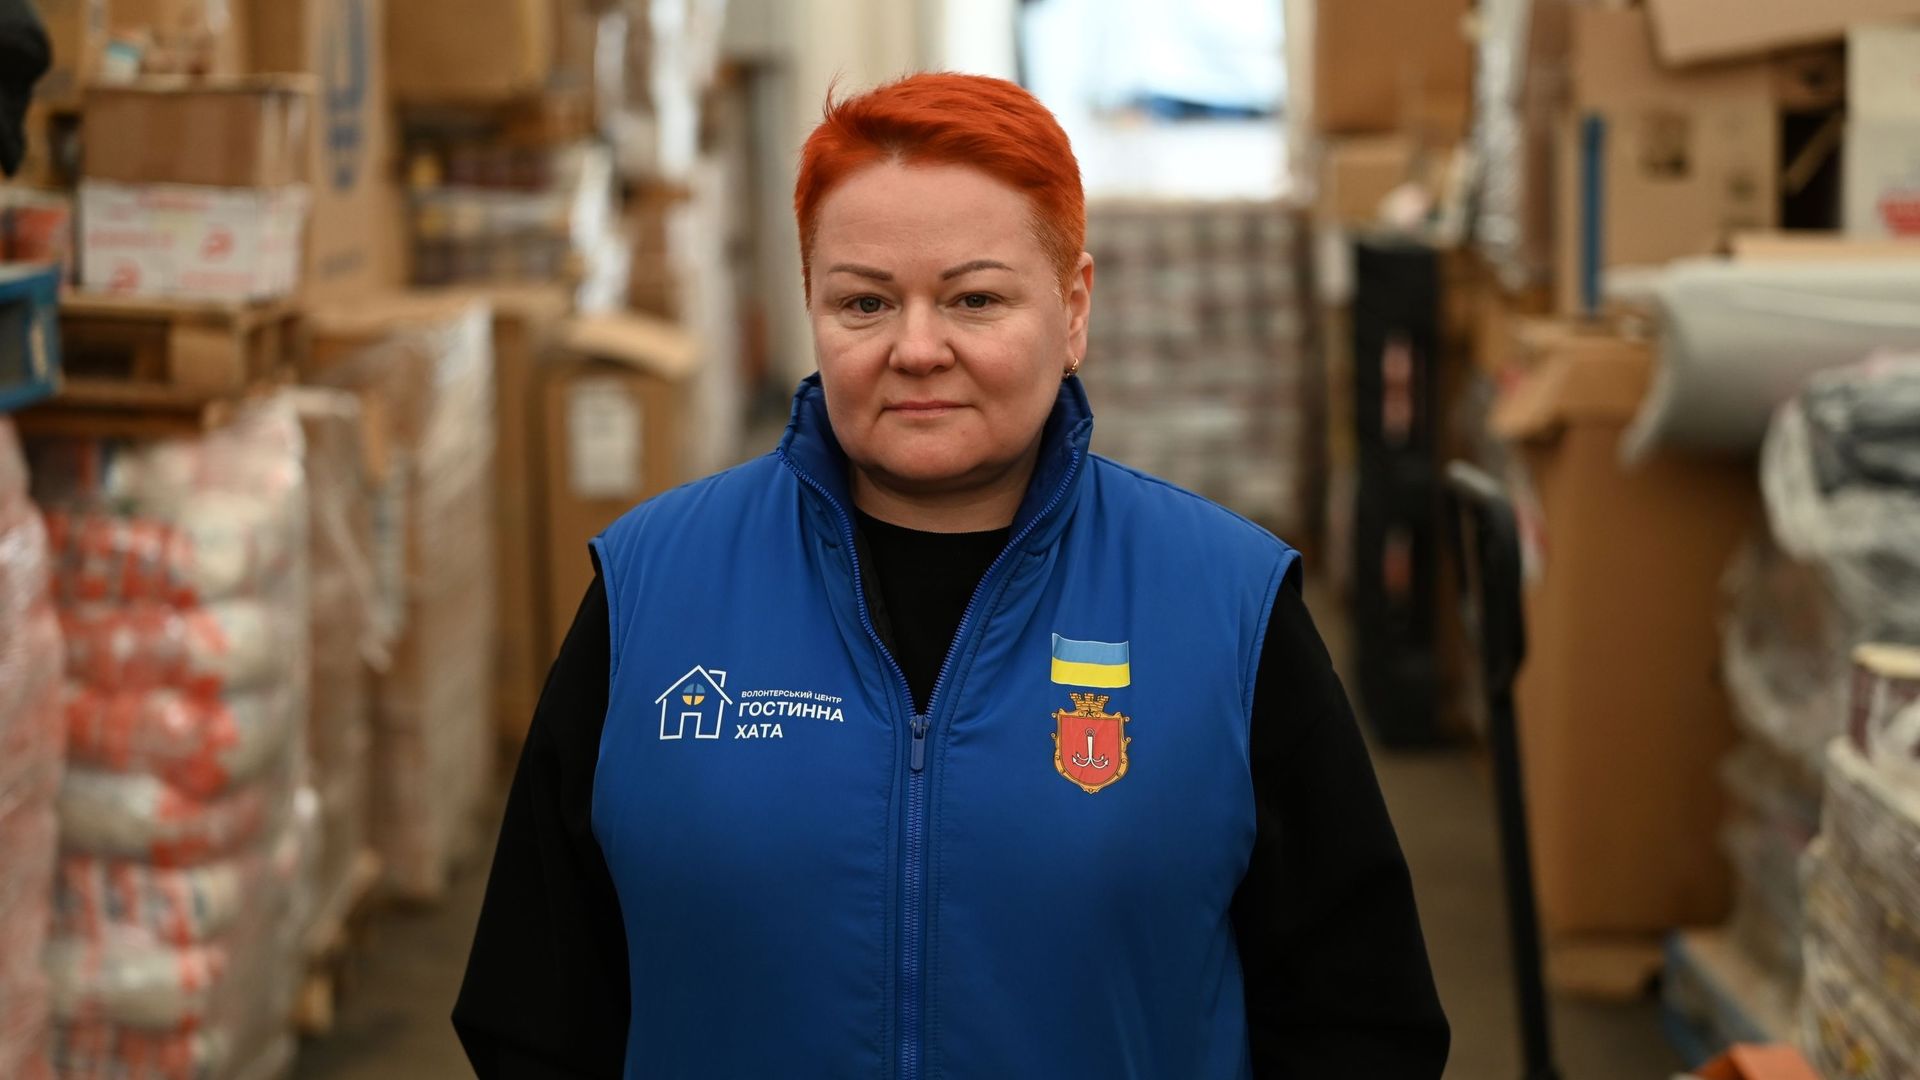 Natalia dirige le centre de dons aux réfugiés d’Odessa